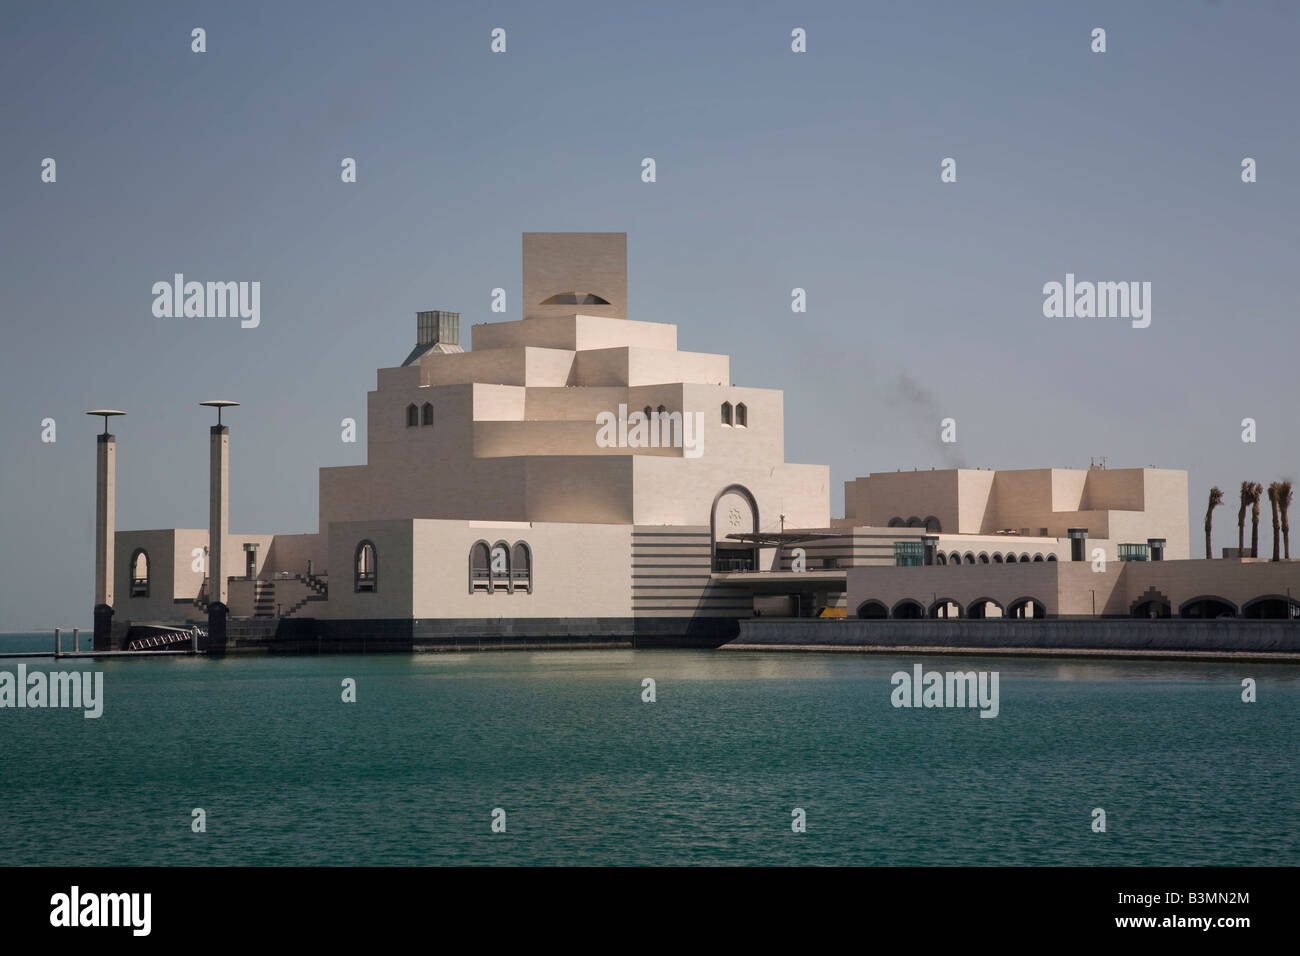 Neues Museum für islamische Kunst in Doha Doha Bay Katar Nahost arabischen Golf Skyline Corniche Skyline Stockfoto